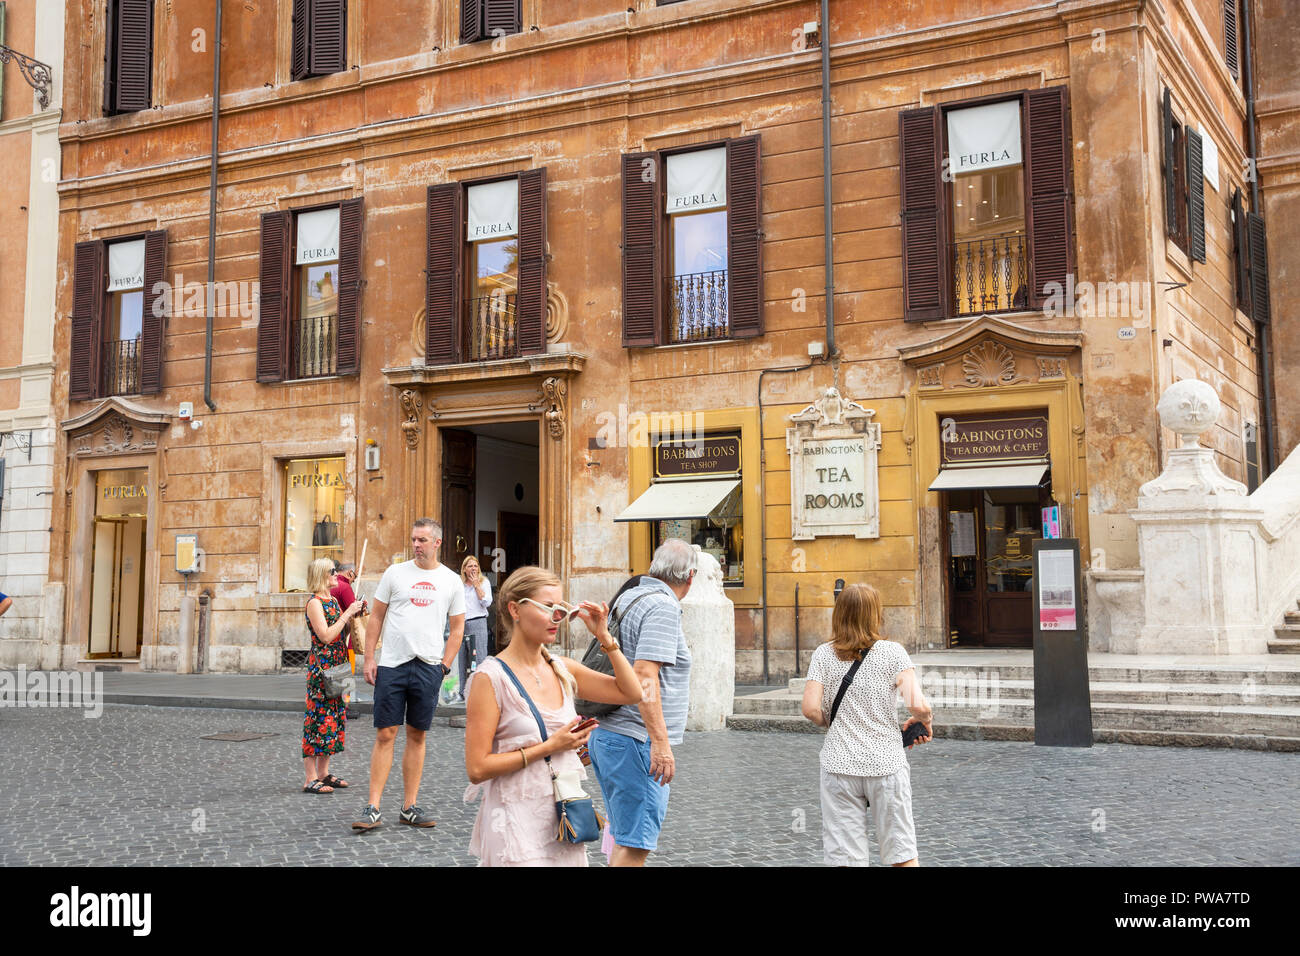 Furla Handtasche aufbewahren und Babingtons Kaffee Zimmer in Piazza Di Spagna neben der Spanischen Treppe in Rom, Italien, Europa Stockfoto